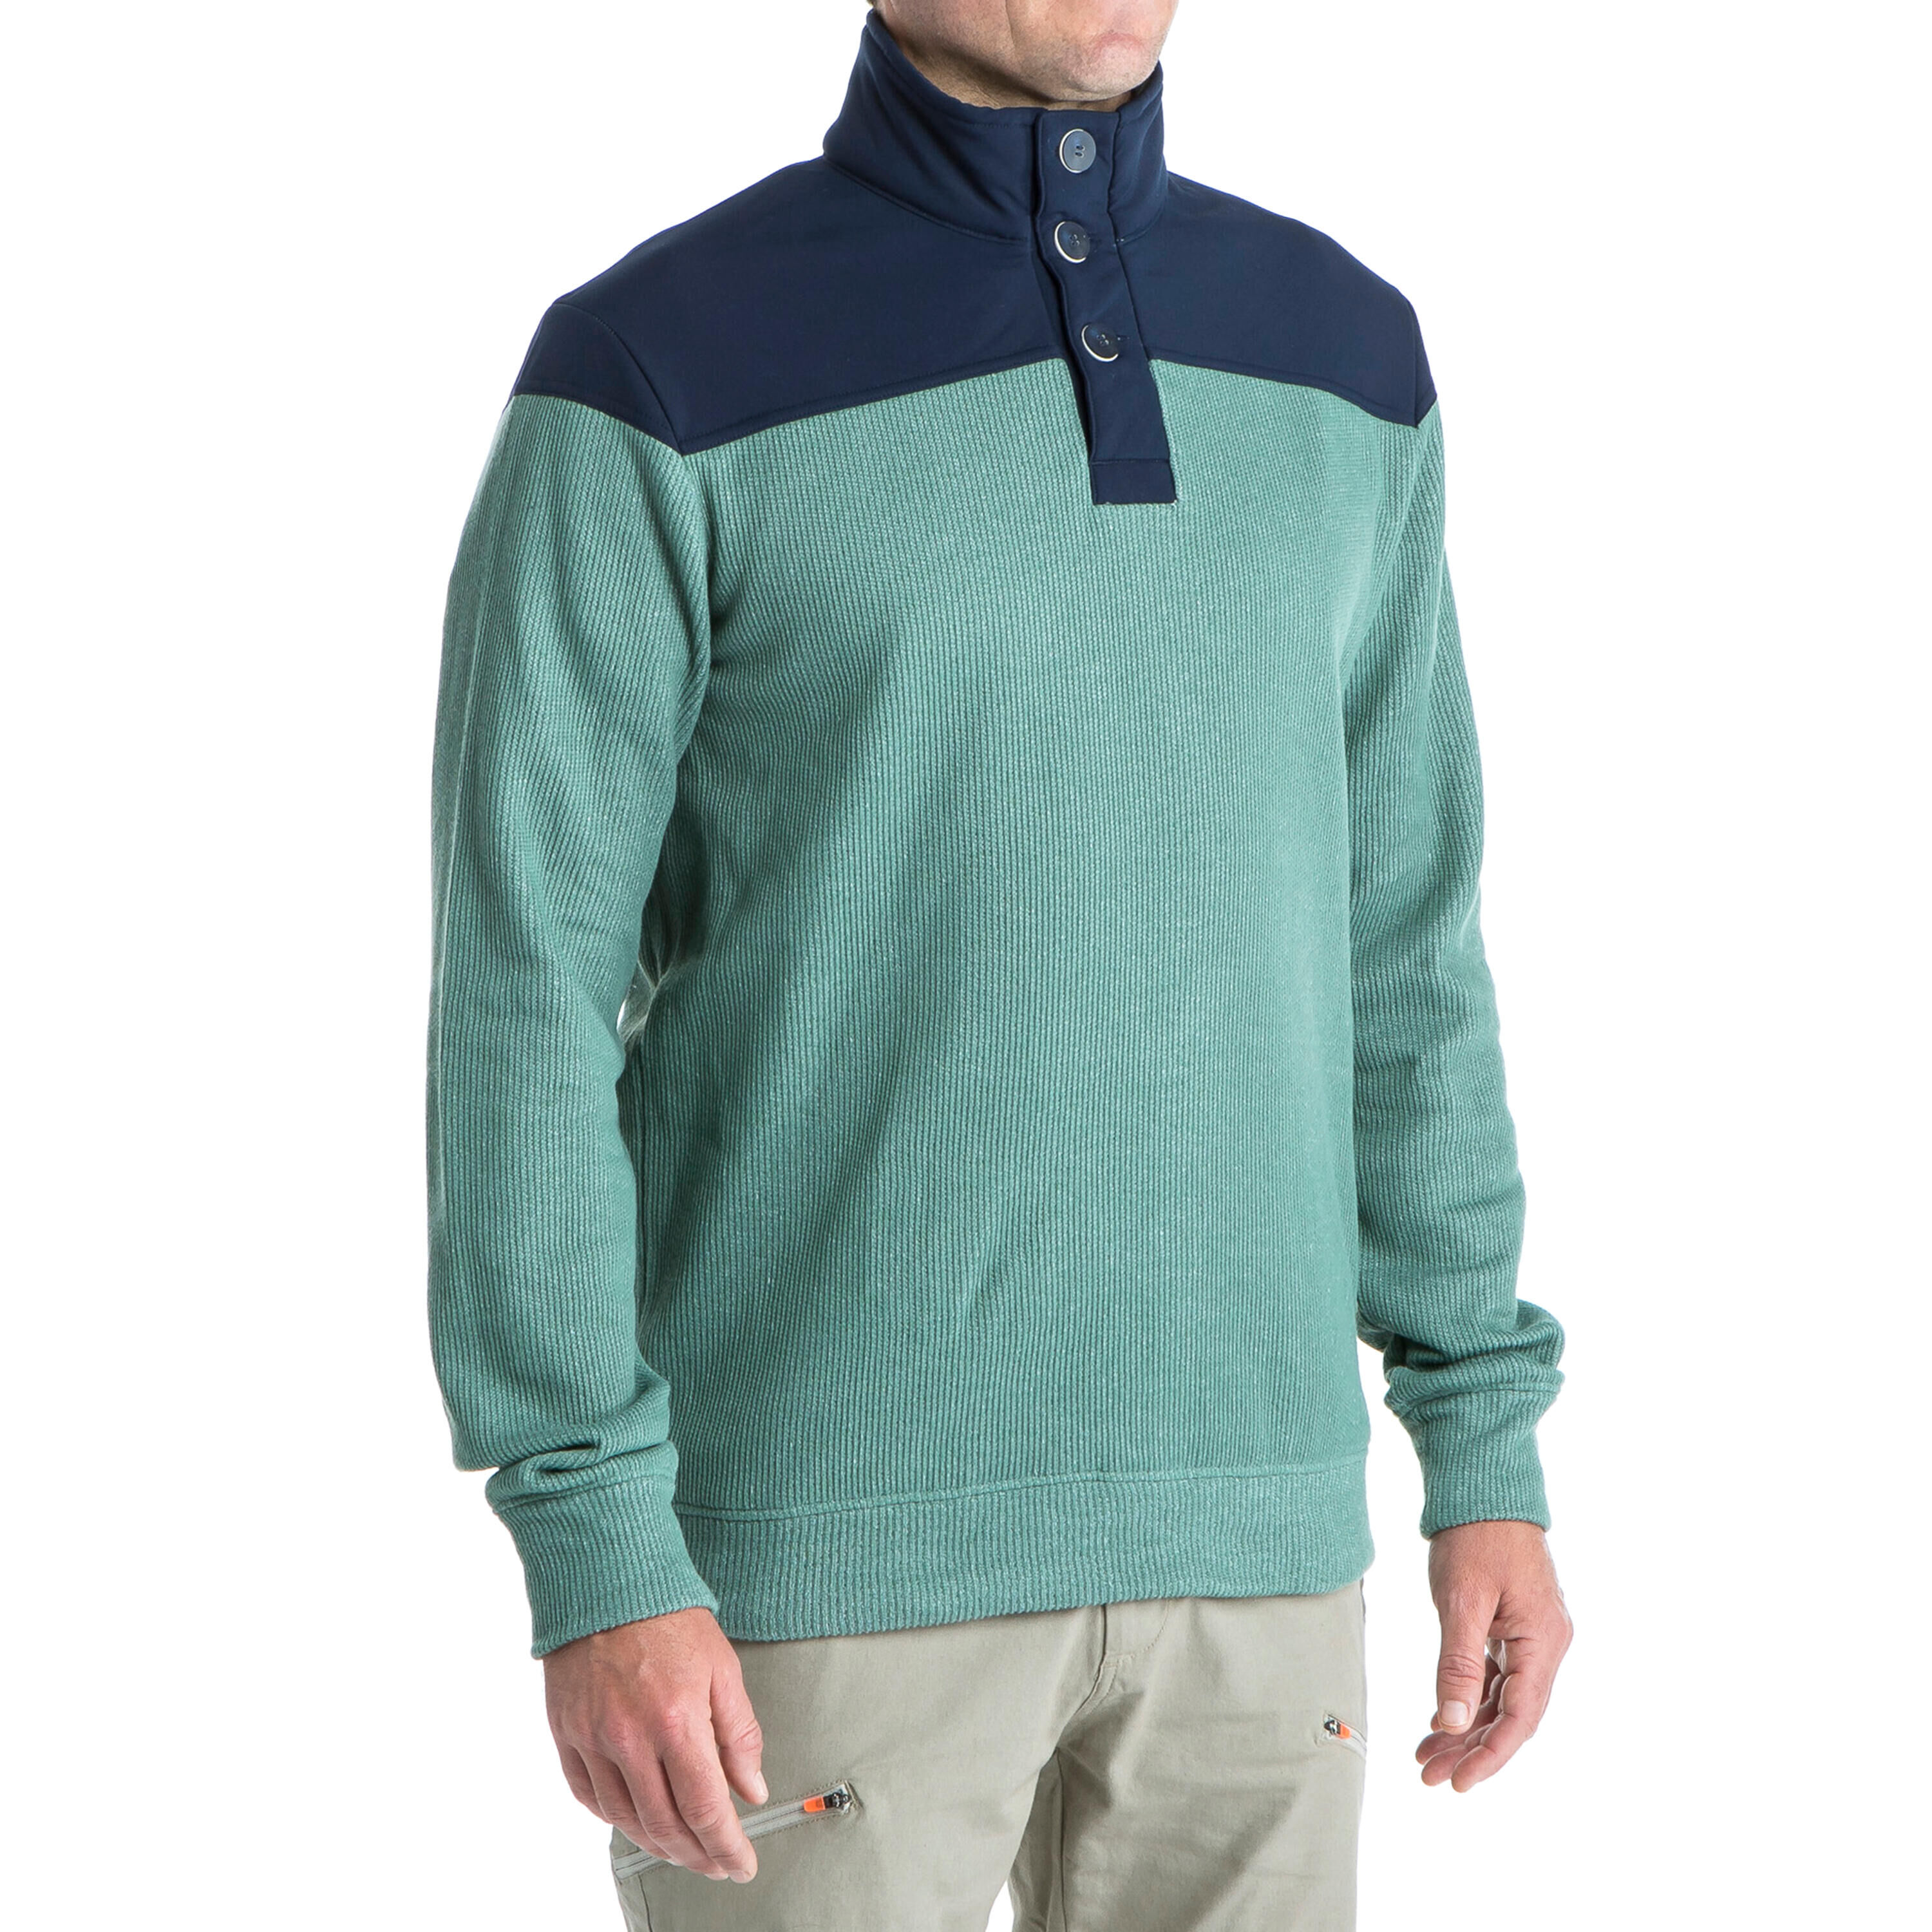 TRIBORD M sailor's sailing pullover 300 - blue khaki